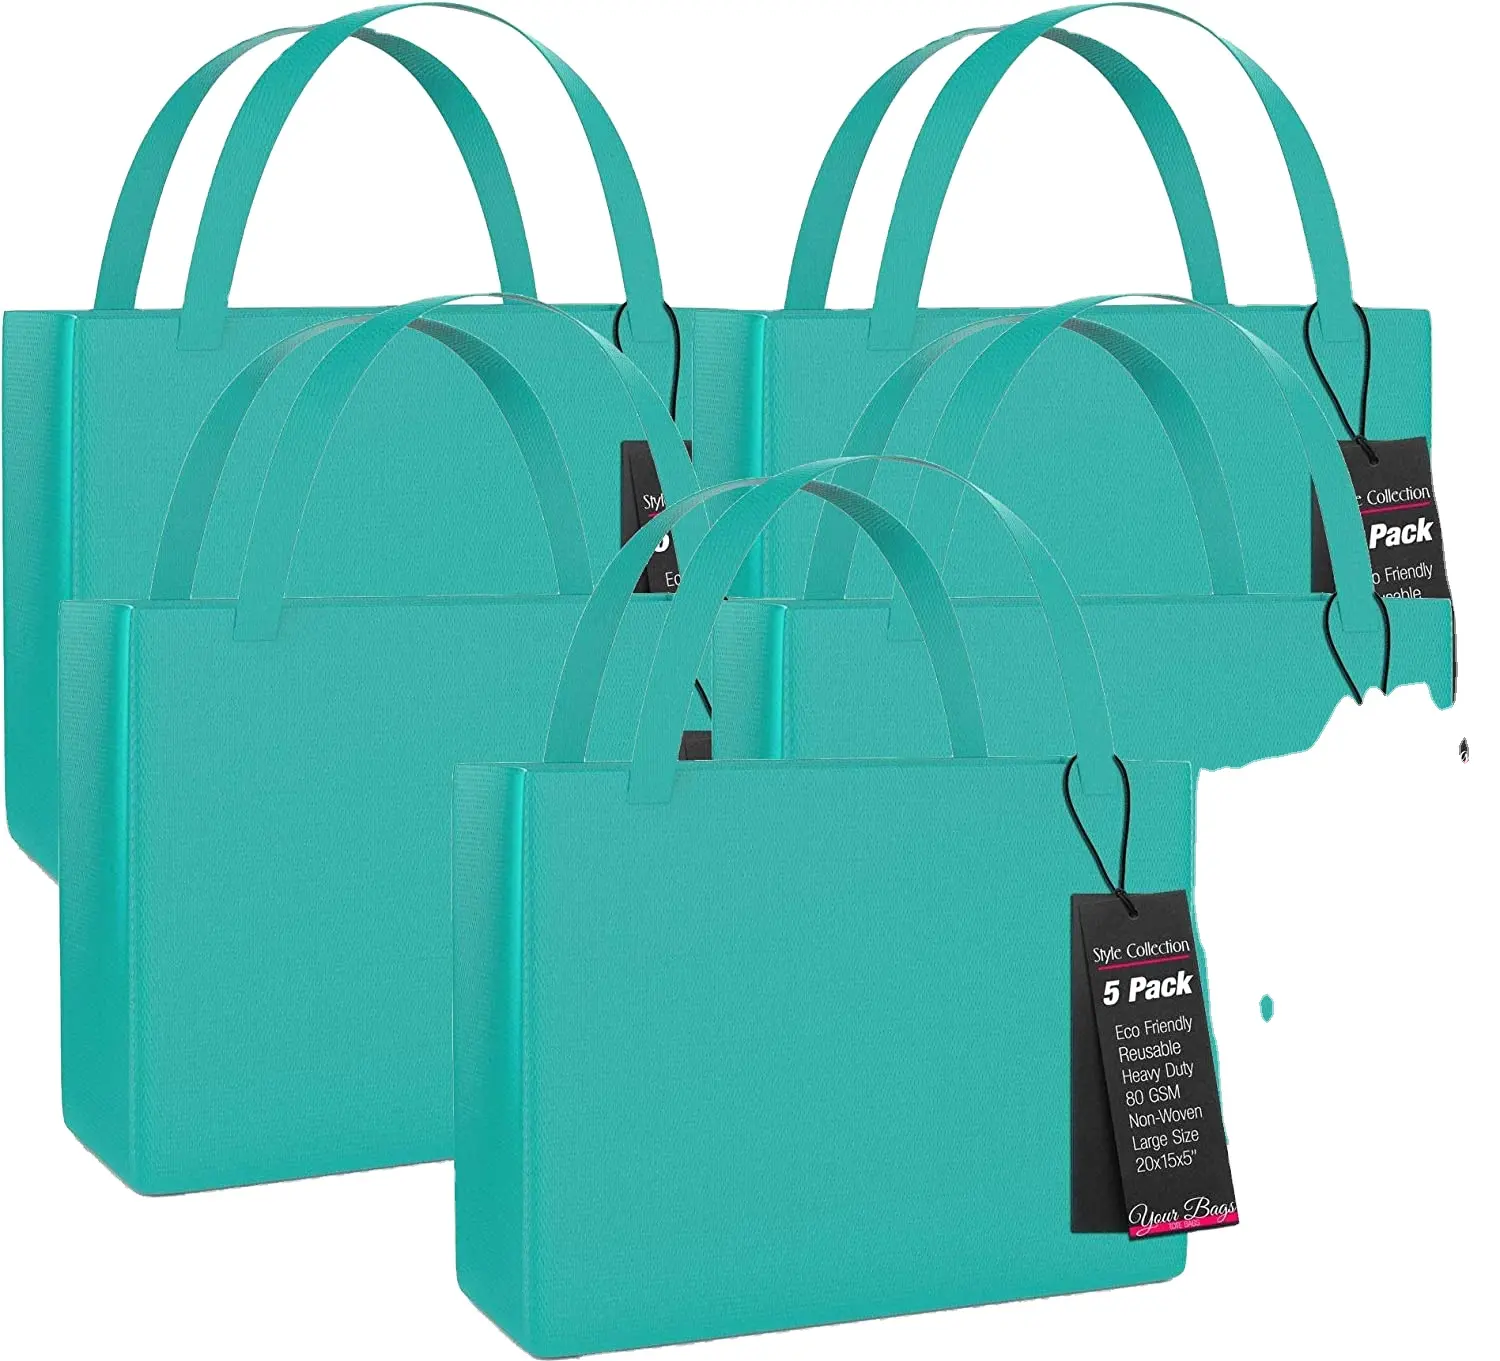 Kunden spezifische wieder verwendbare Einkaufstasche aus recyceltem Öko-Vlies mit Logo Biologisch abbaubare, verstärkte Einkaufstaschen